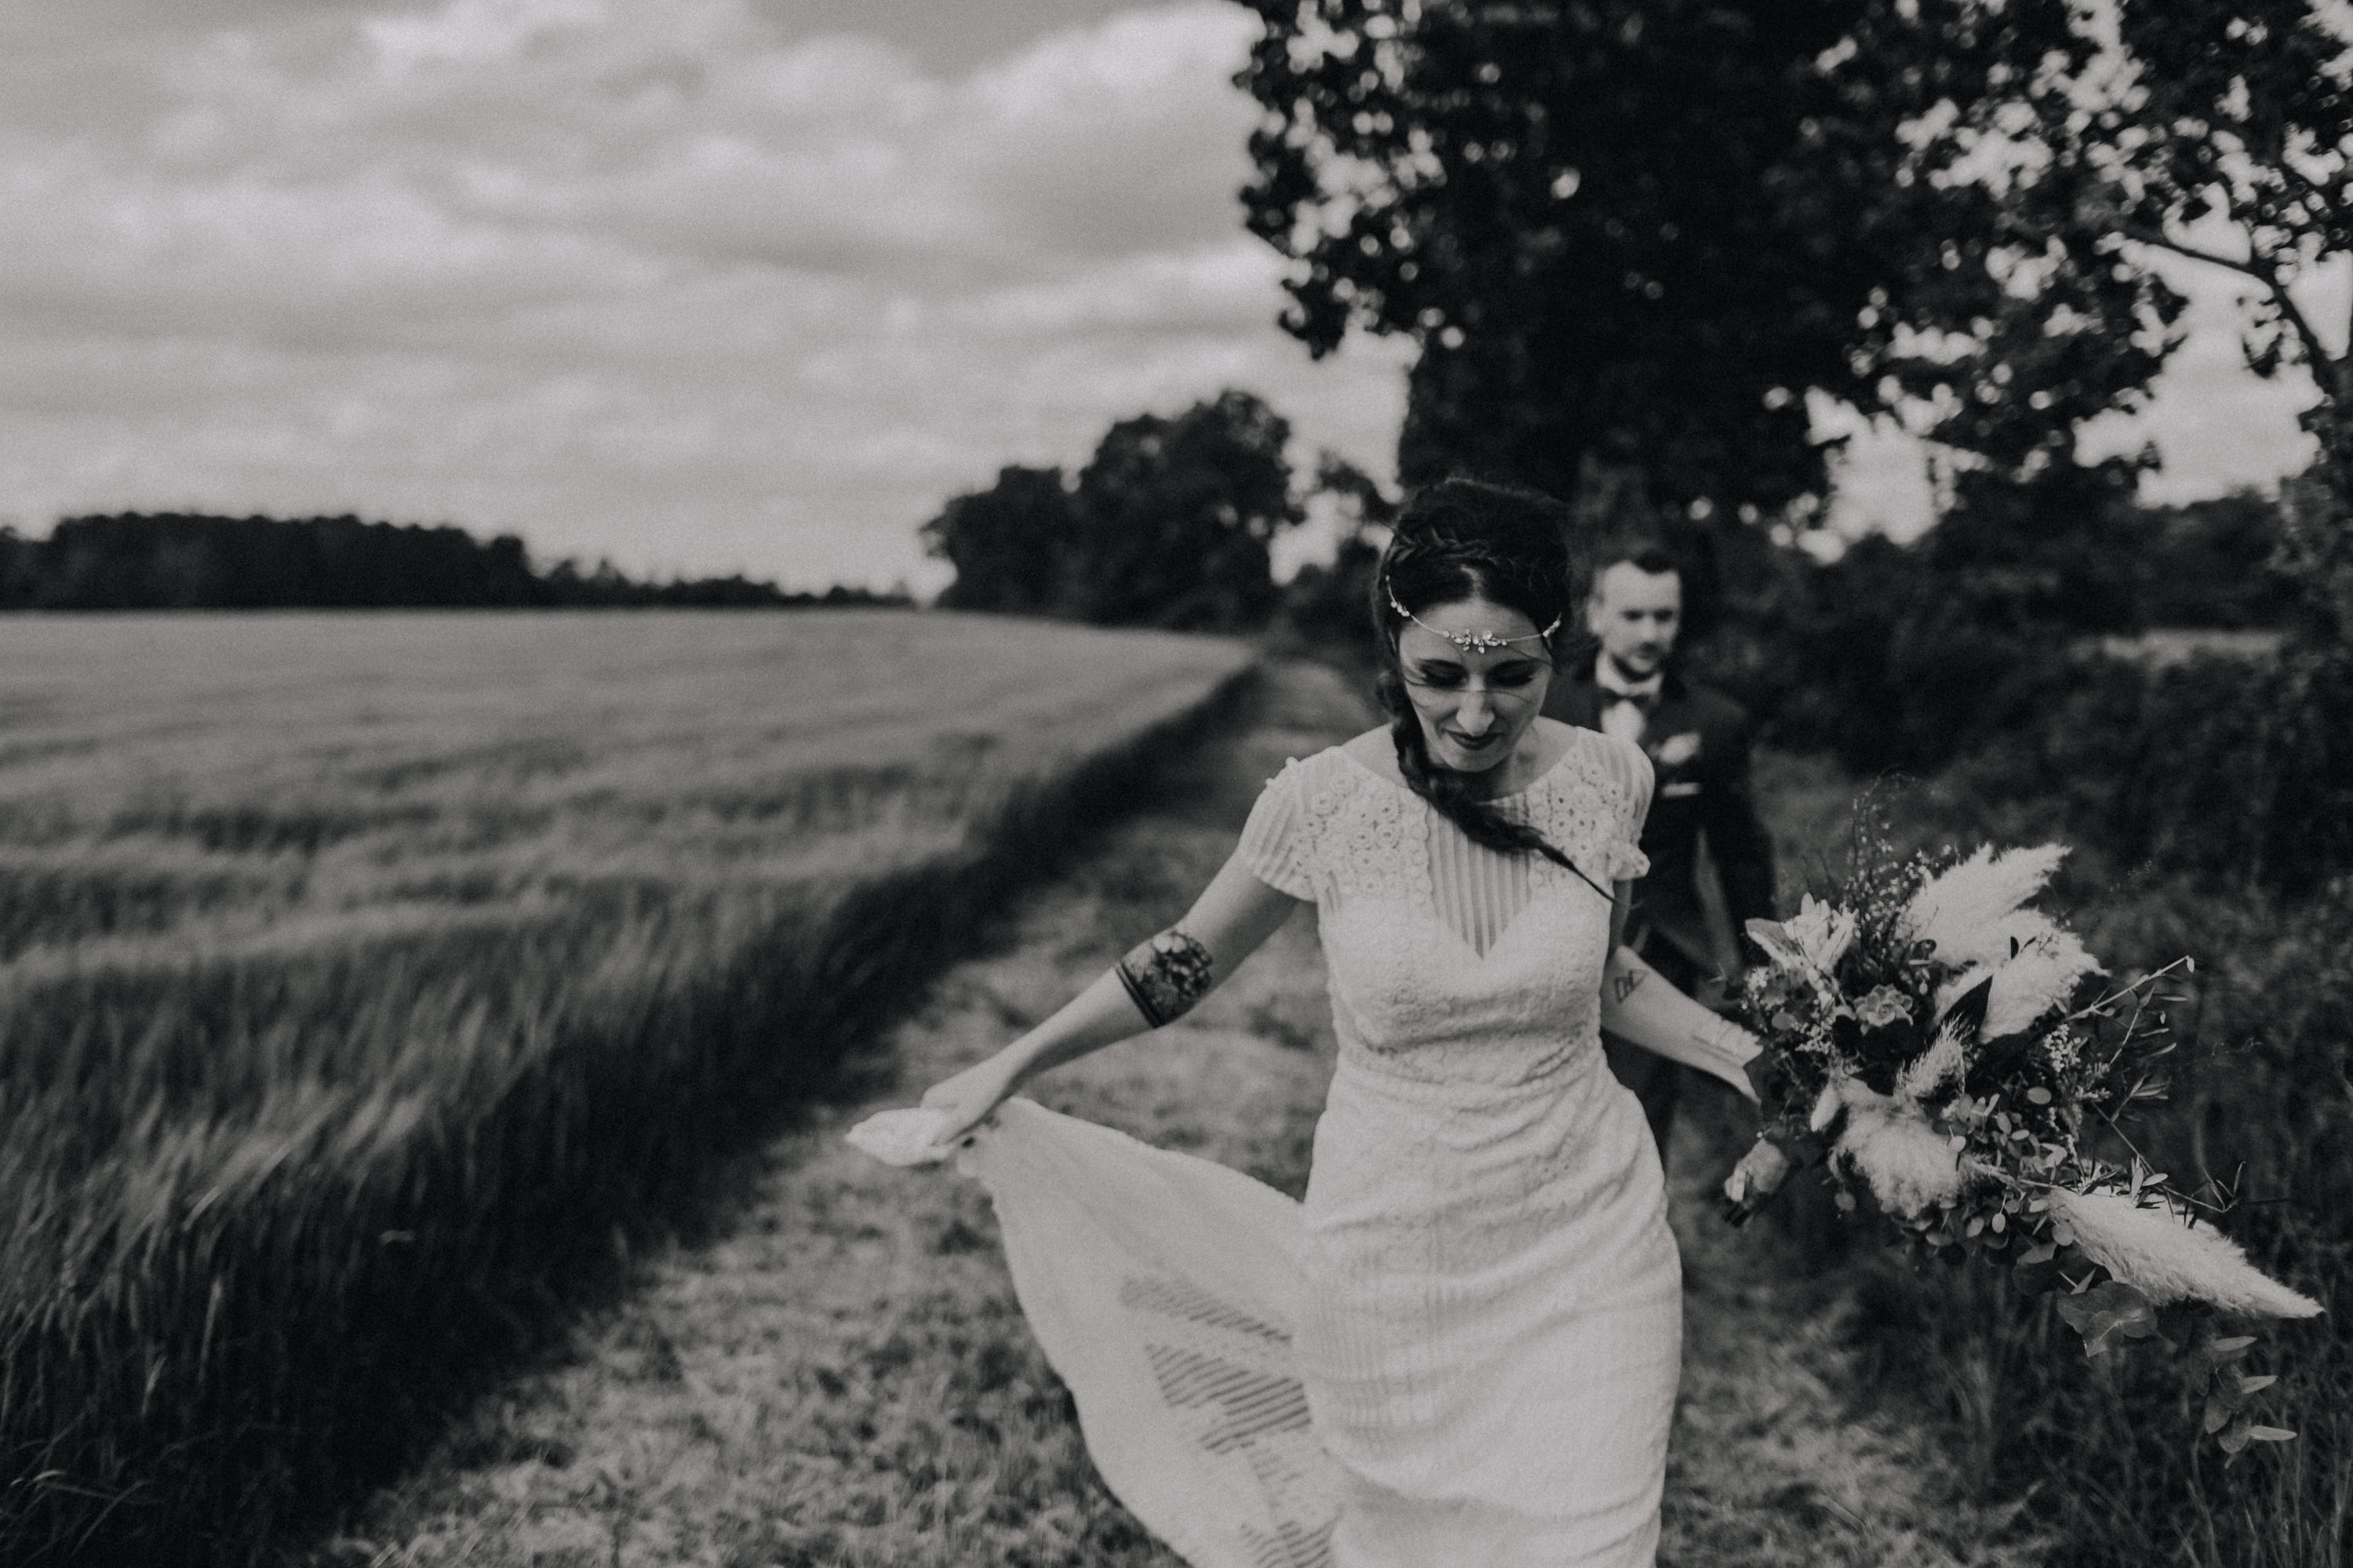 Dieses Foto ist Teil einer Hochzeitsreportage, die von den Hochzeitsfotografen Tom und Lia aus Potsdam aufgenommen wurde. Zu sehen ist das Brautpaar während des Brautpaar-Shootings in einem satt grünem Feld bei strahlendem Sonnenschein.